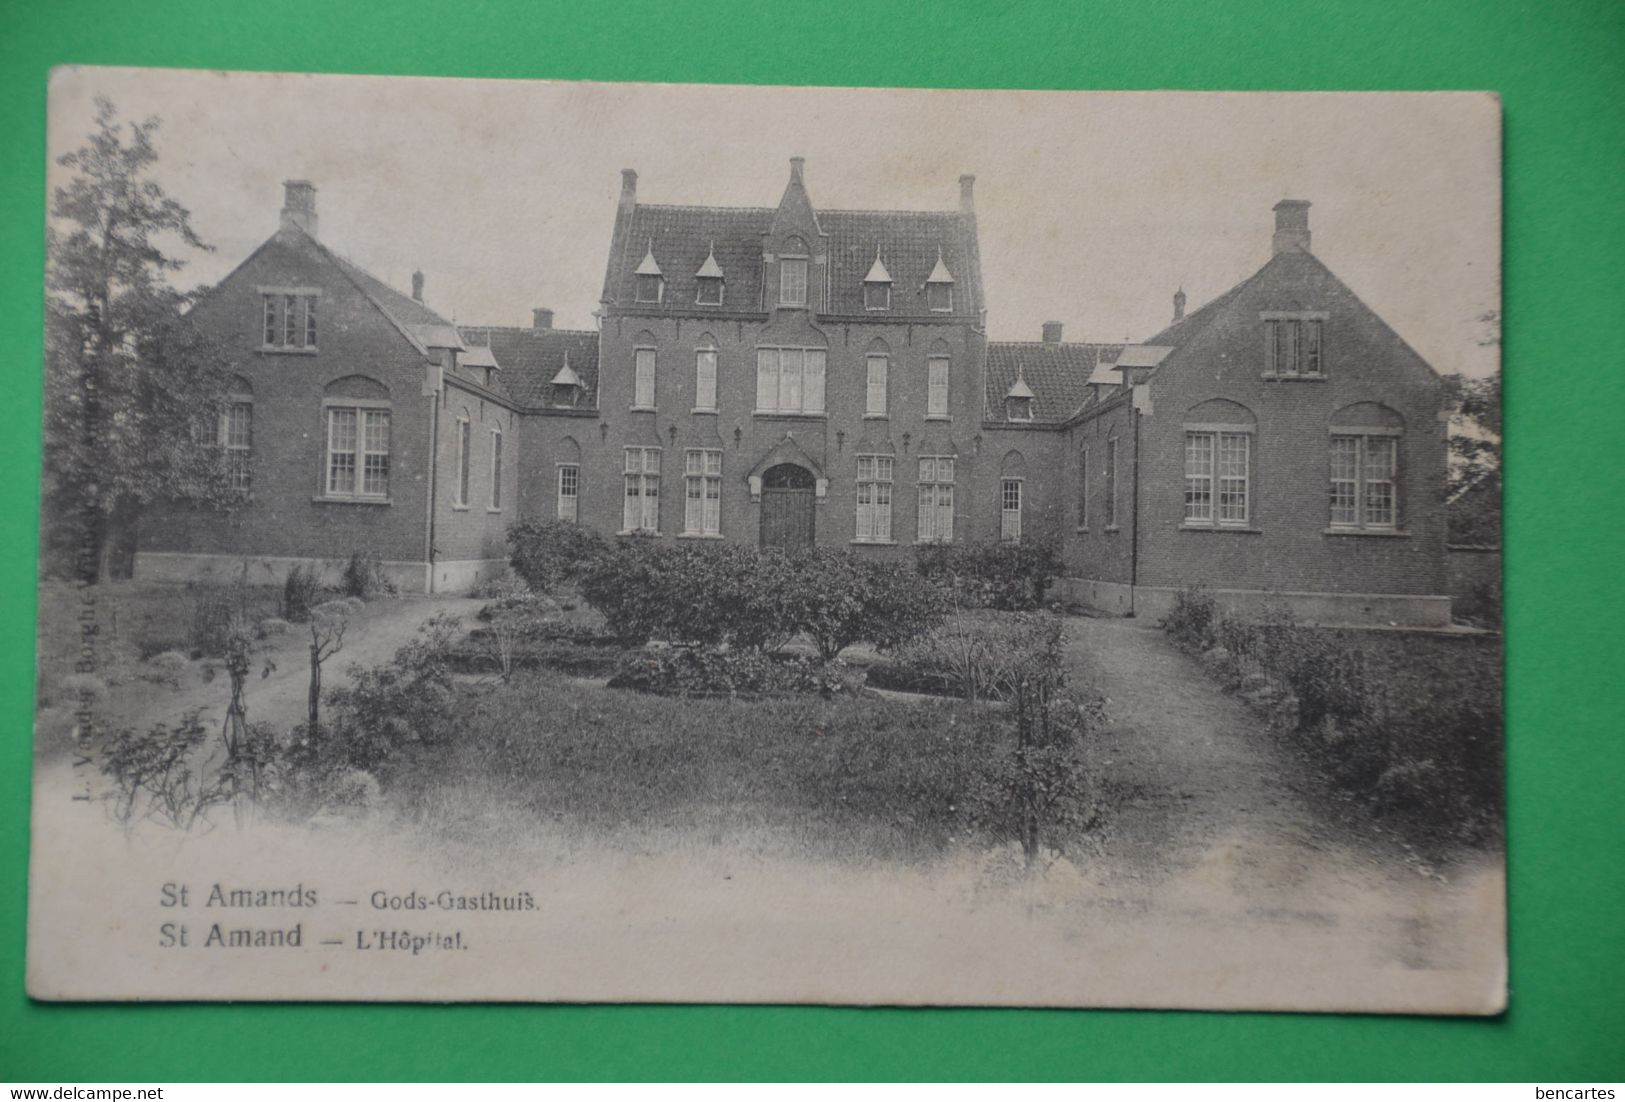 St Amands 1905: Gods-Gasthuis - Puurs